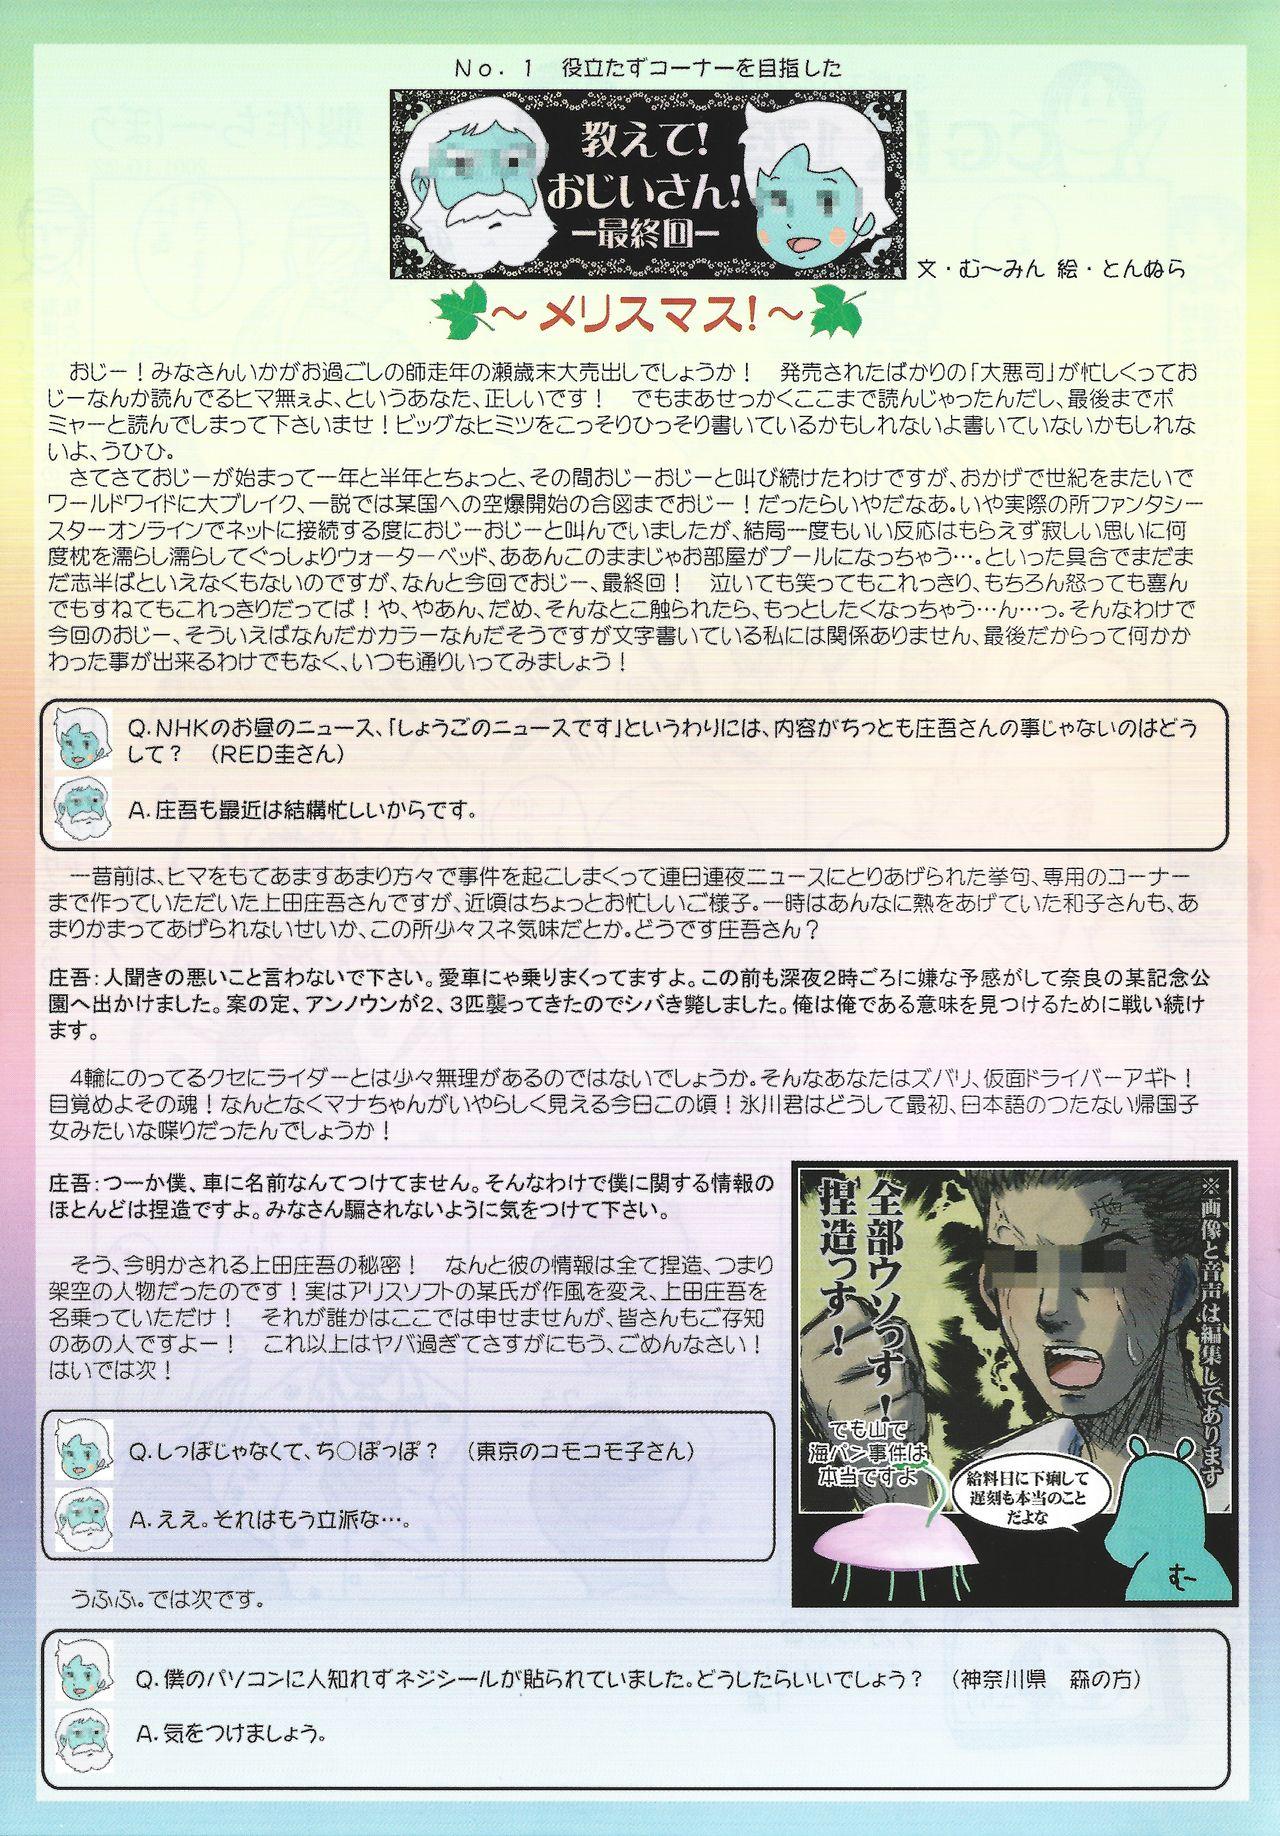 Arisu no Denchi Bakudan Vol. 20 15